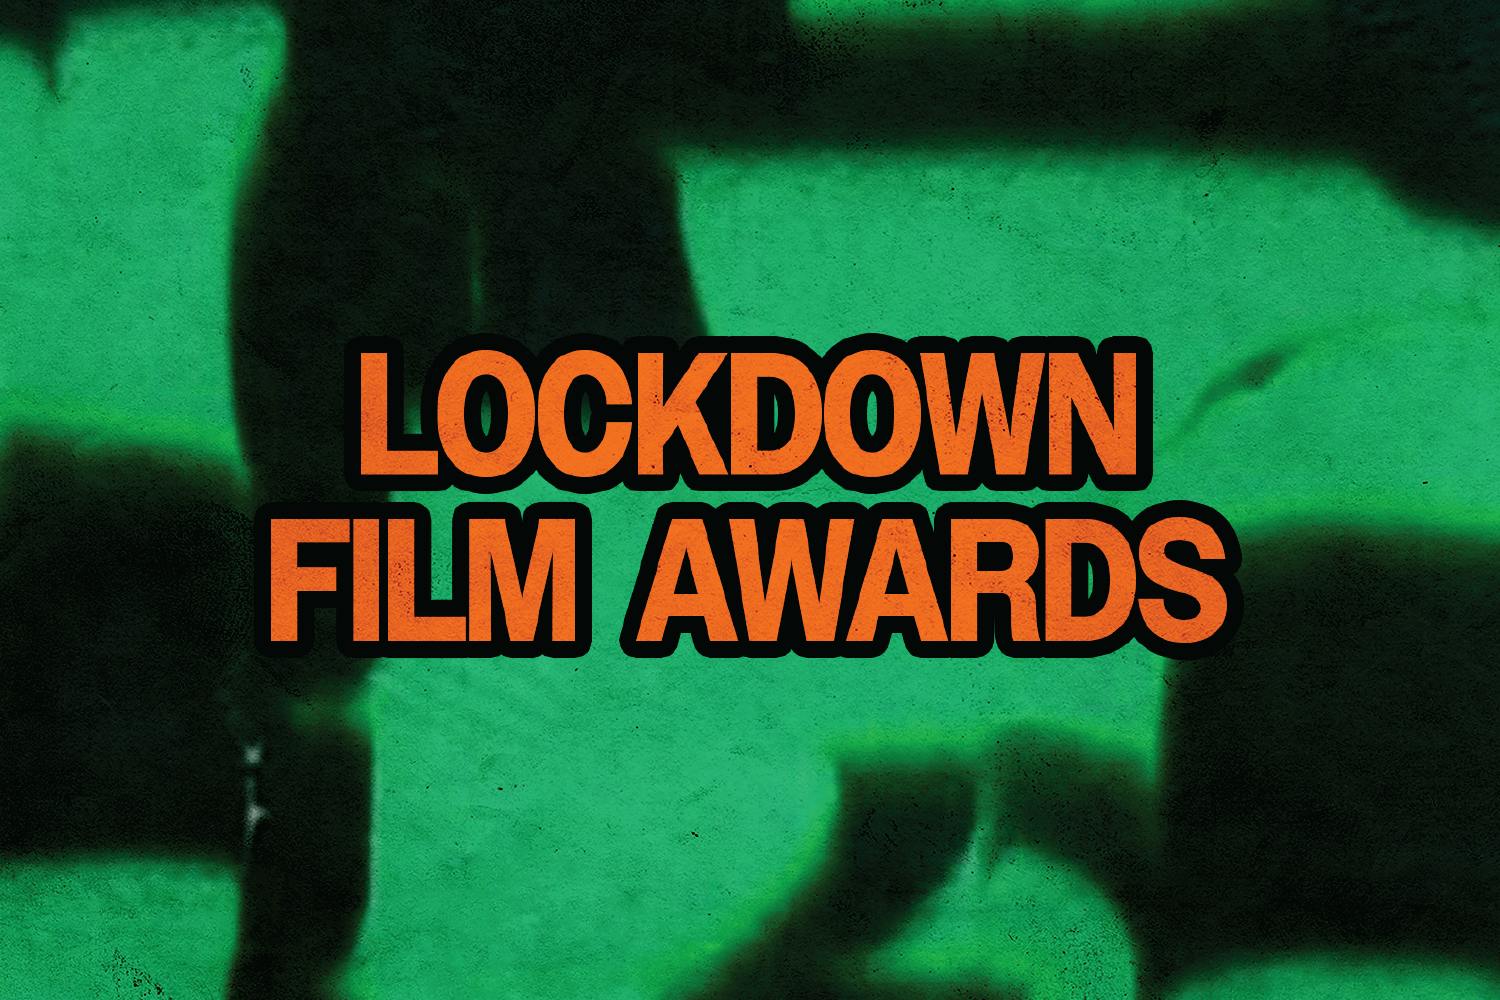 Slide that reads "LOCKDOWN FILM AWARDS"